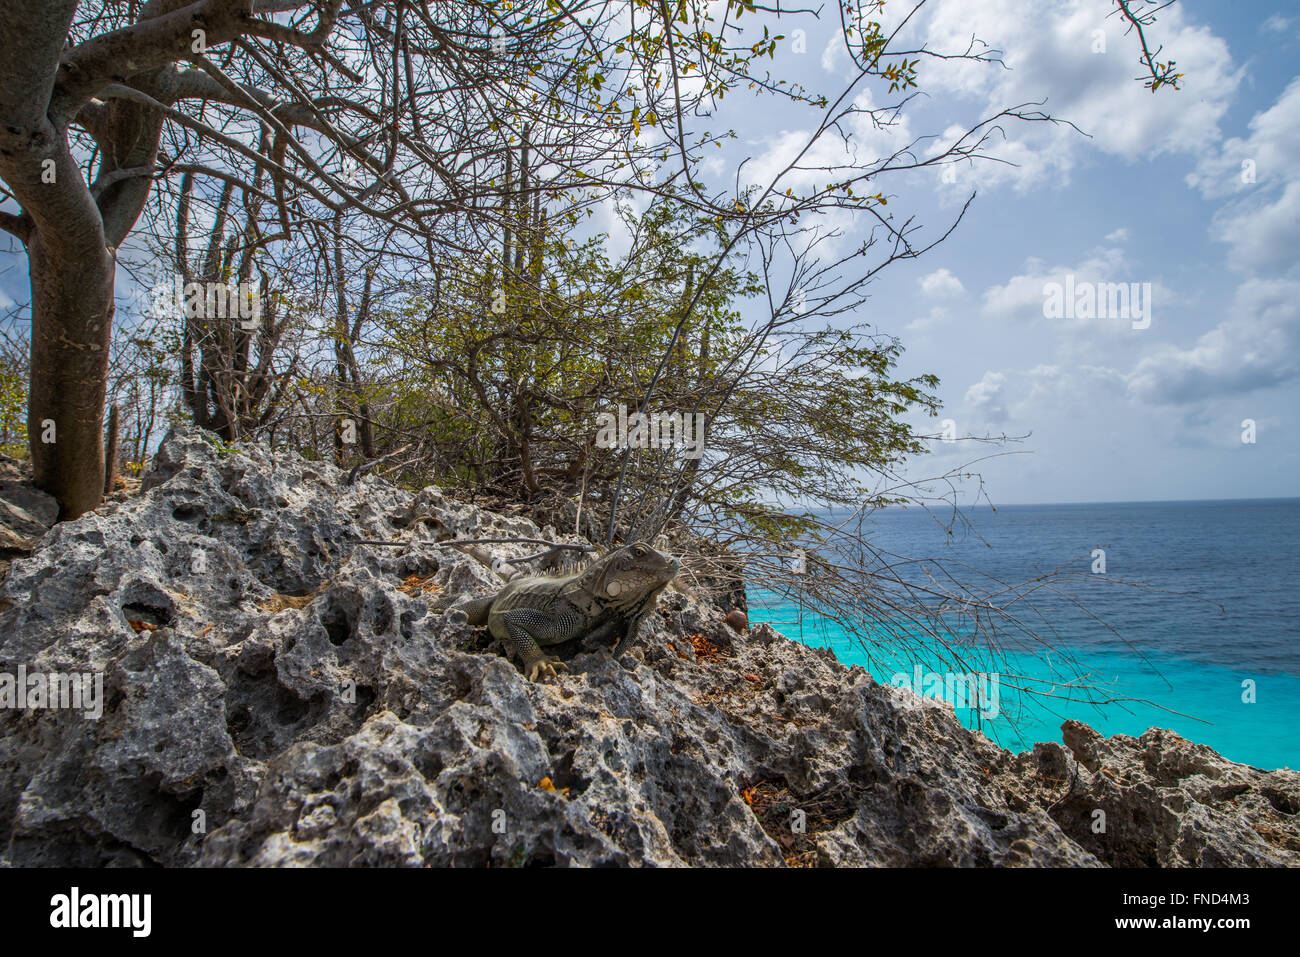 Hermosas aguas azul celeste del mar alrededor de Bonaire Foto de stock